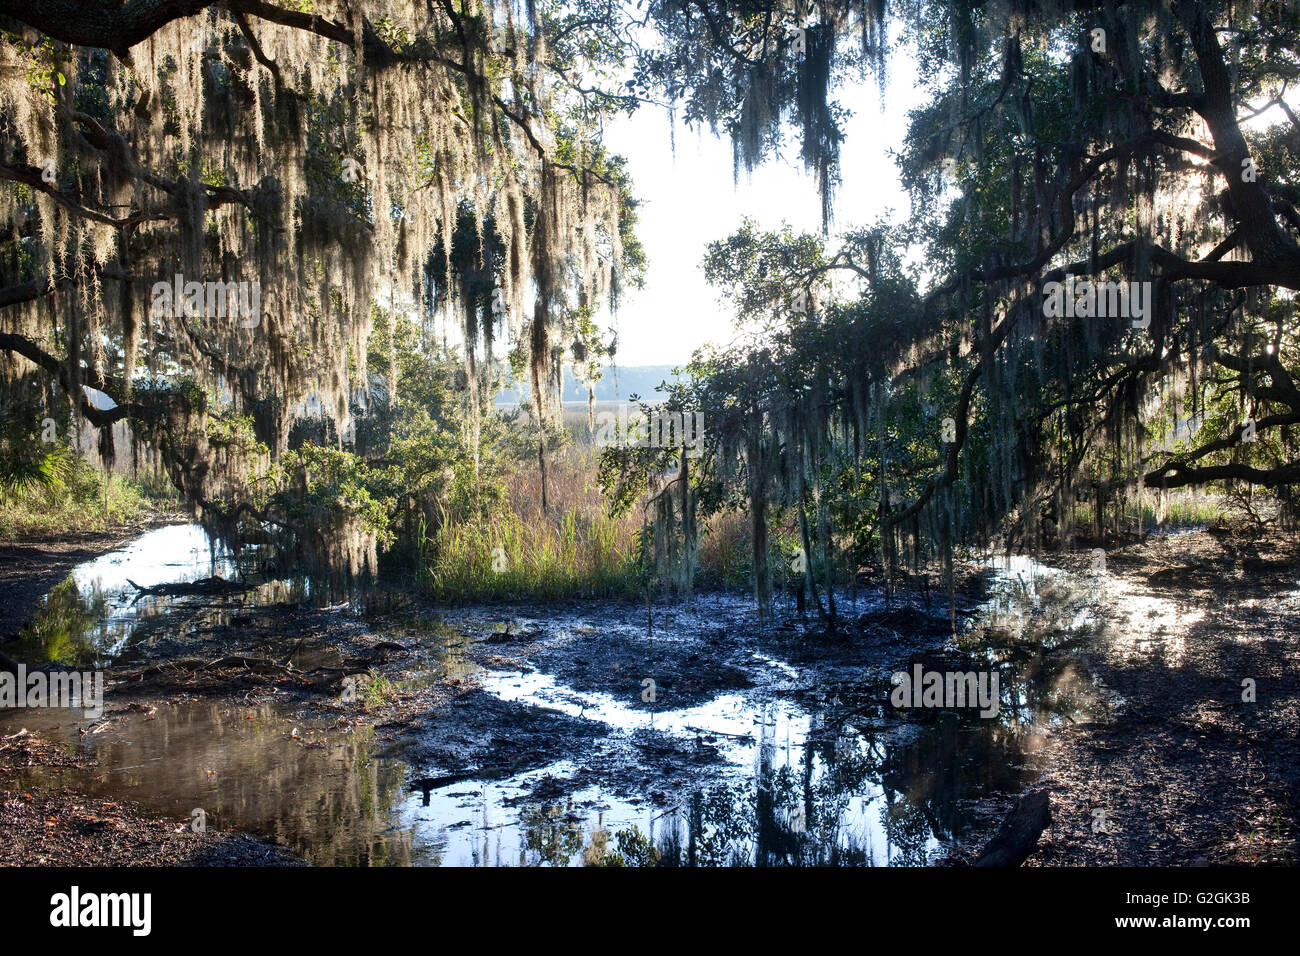 South Carolina Landschaft mit spanischem Moos, Phaseneiche bei Ebbe auf Salz-Sumpf Stockfoto